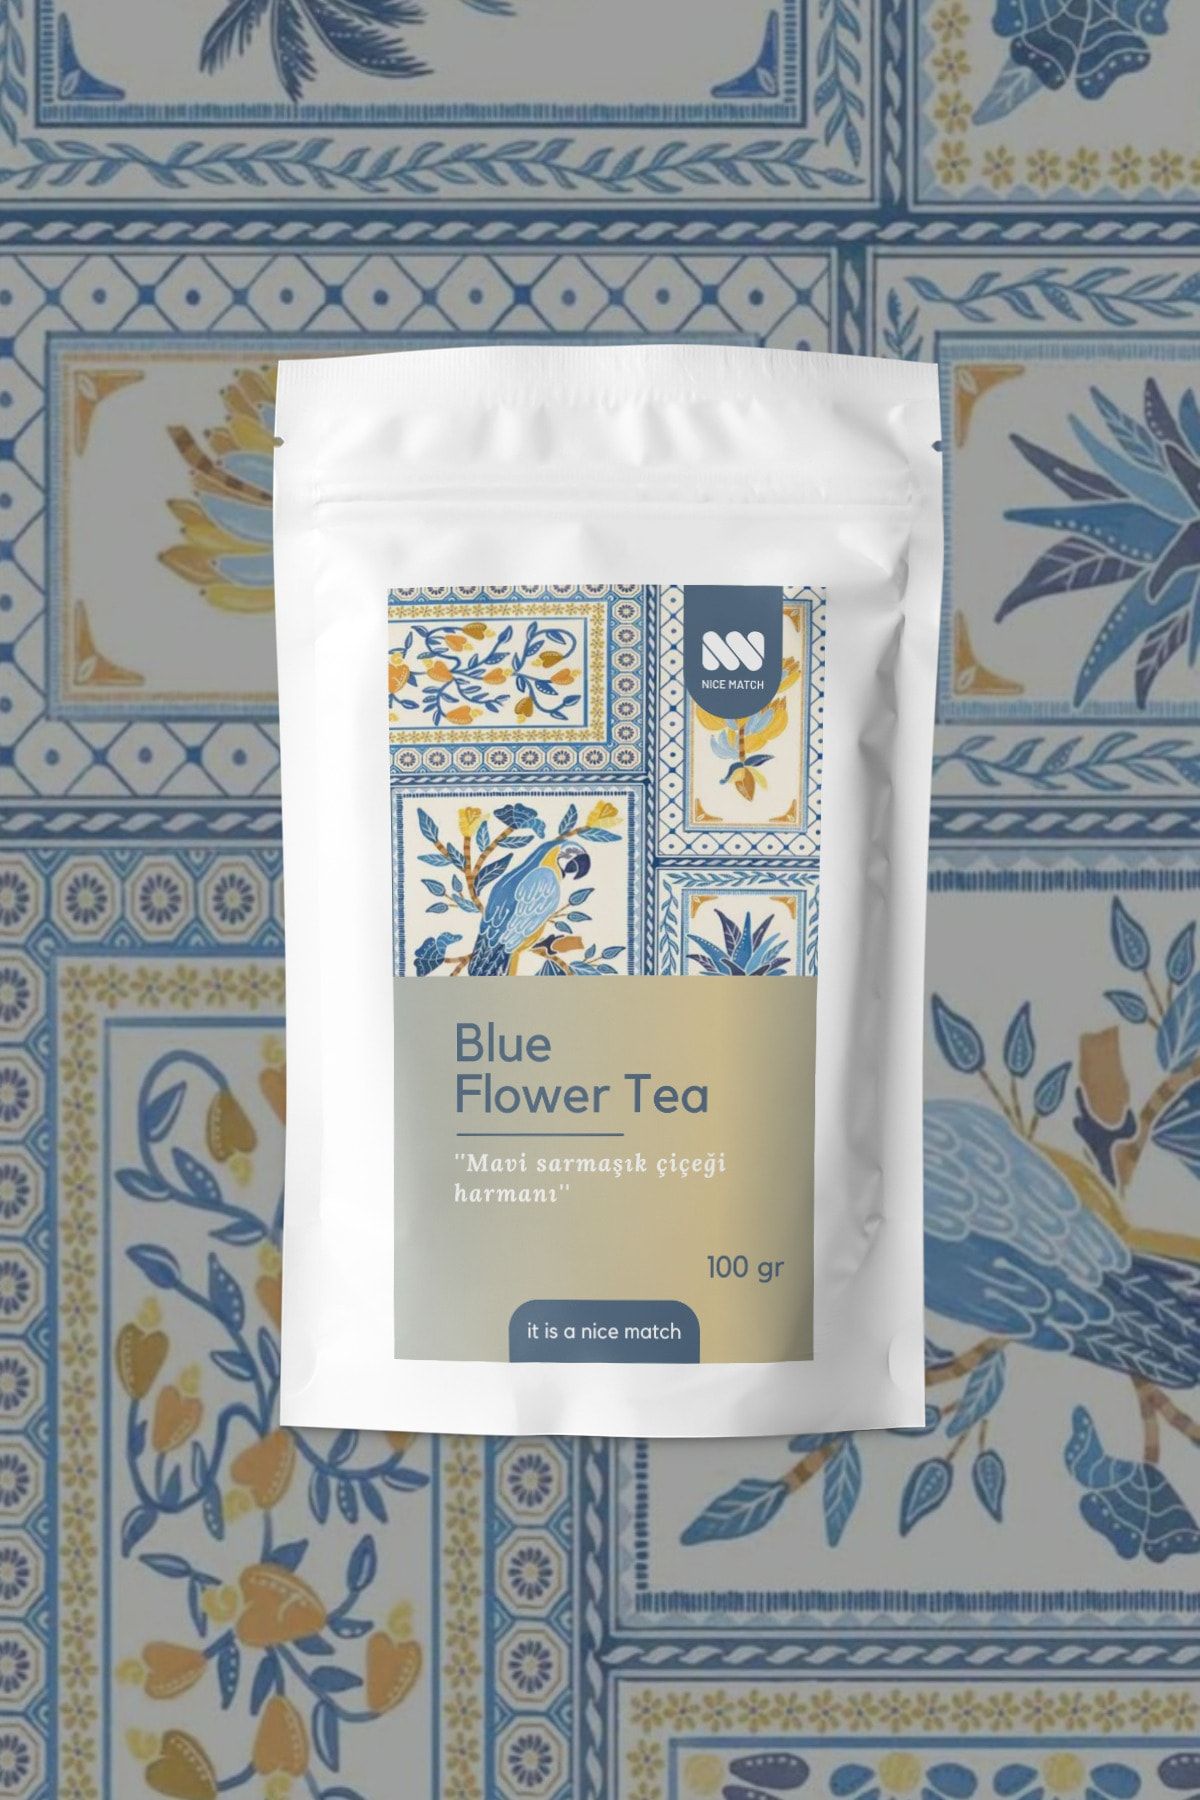 Nice Match Blue Flower Tea - Mavi Sarmaşık Çiçeği Harmanı Çayı 100 Gr